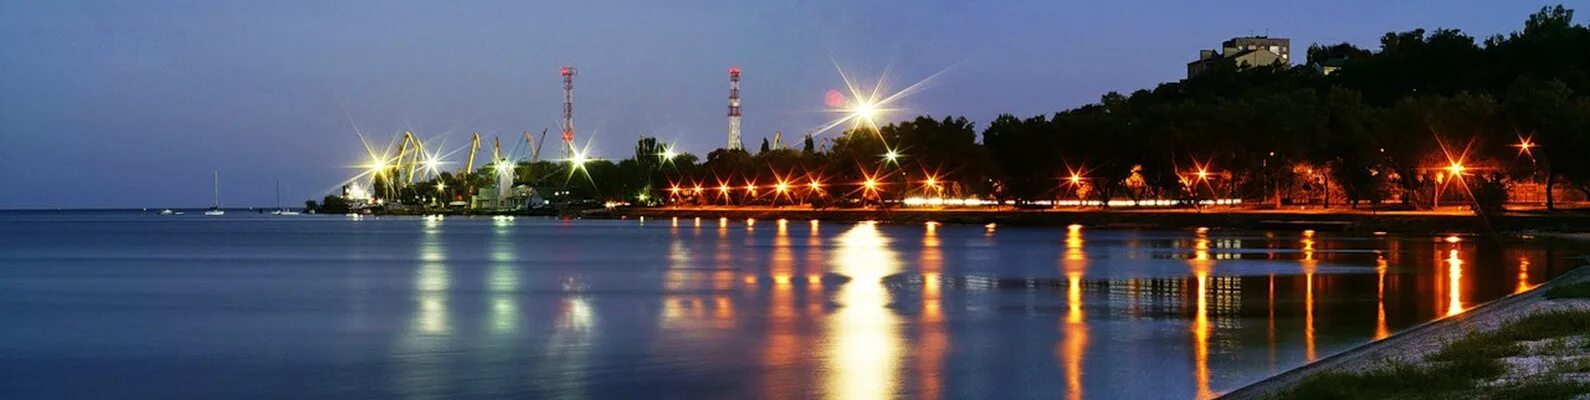 Ночная набережная Таганрог. Пушкинская набережная Таганрог. Таганрог виды города. Таганрог набережная панорама.